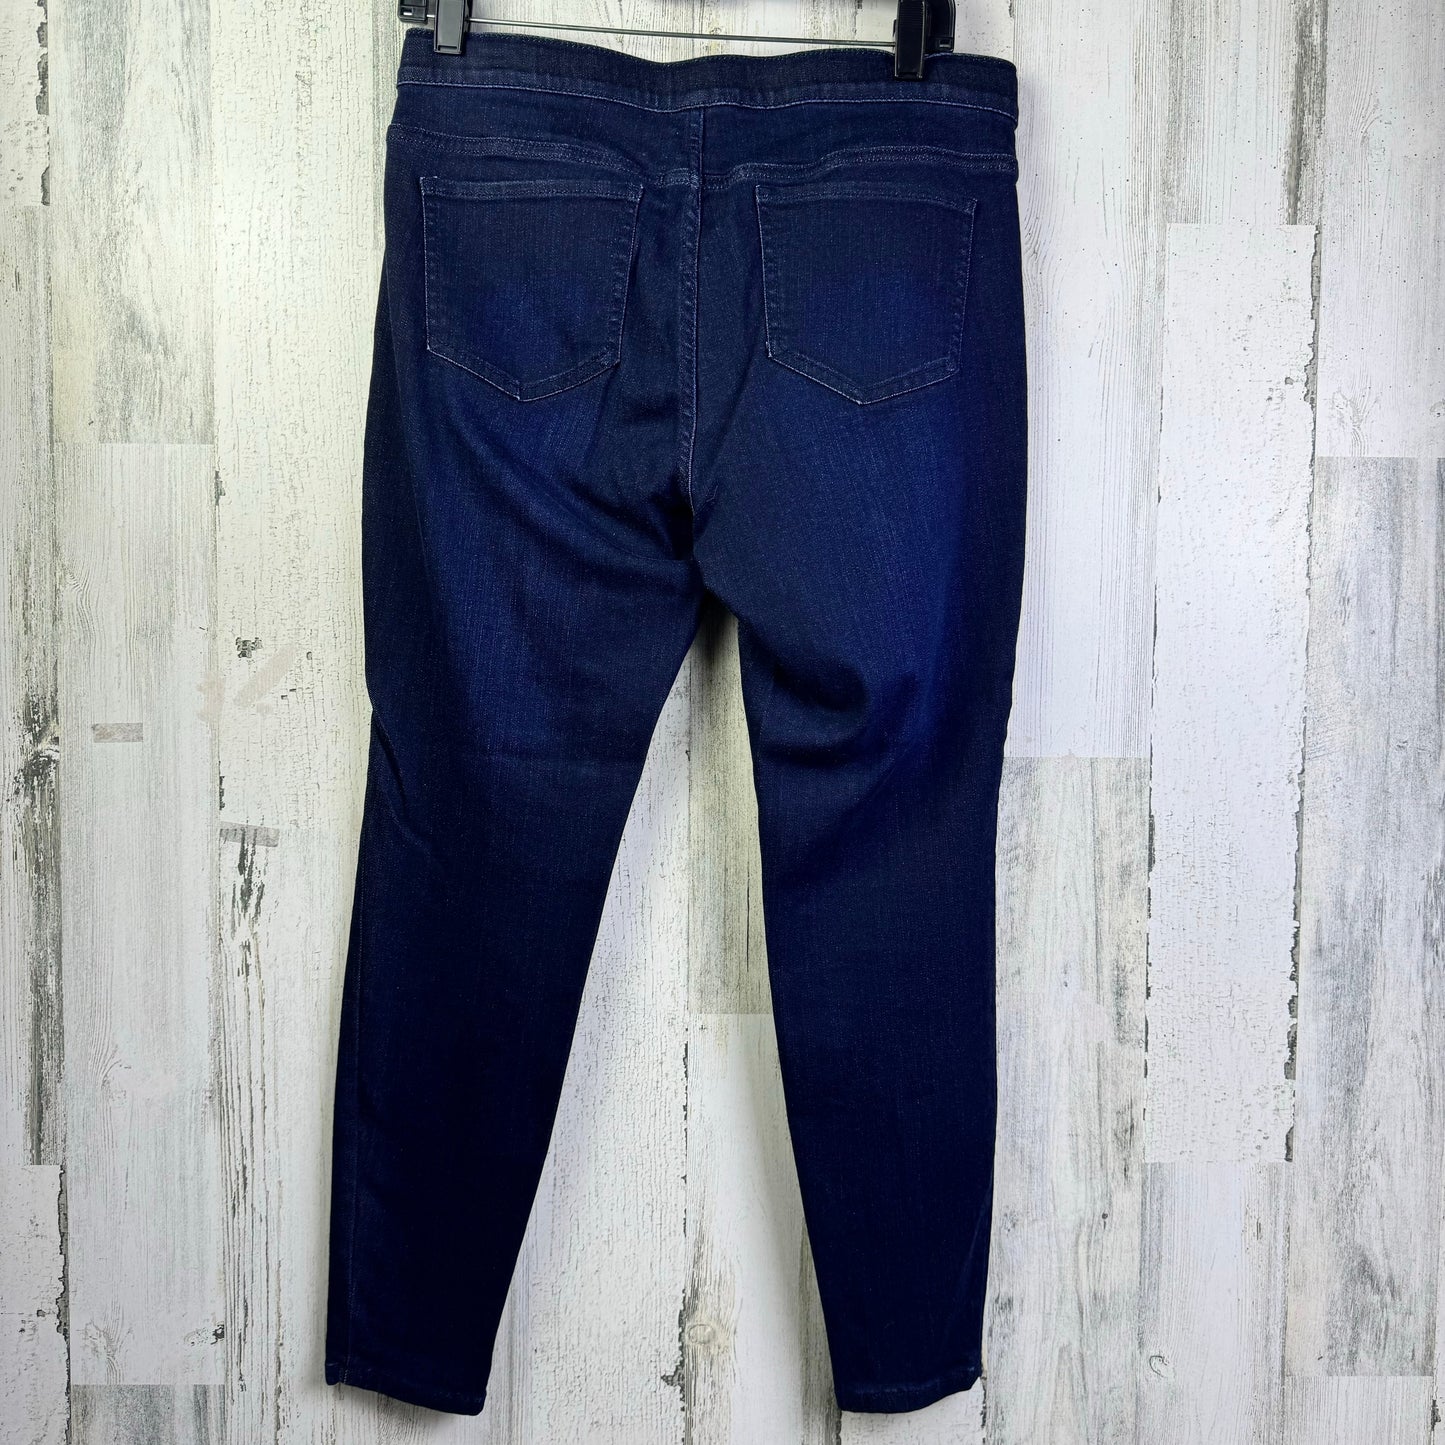 Jeans Skinny By J Jill  Size: 10